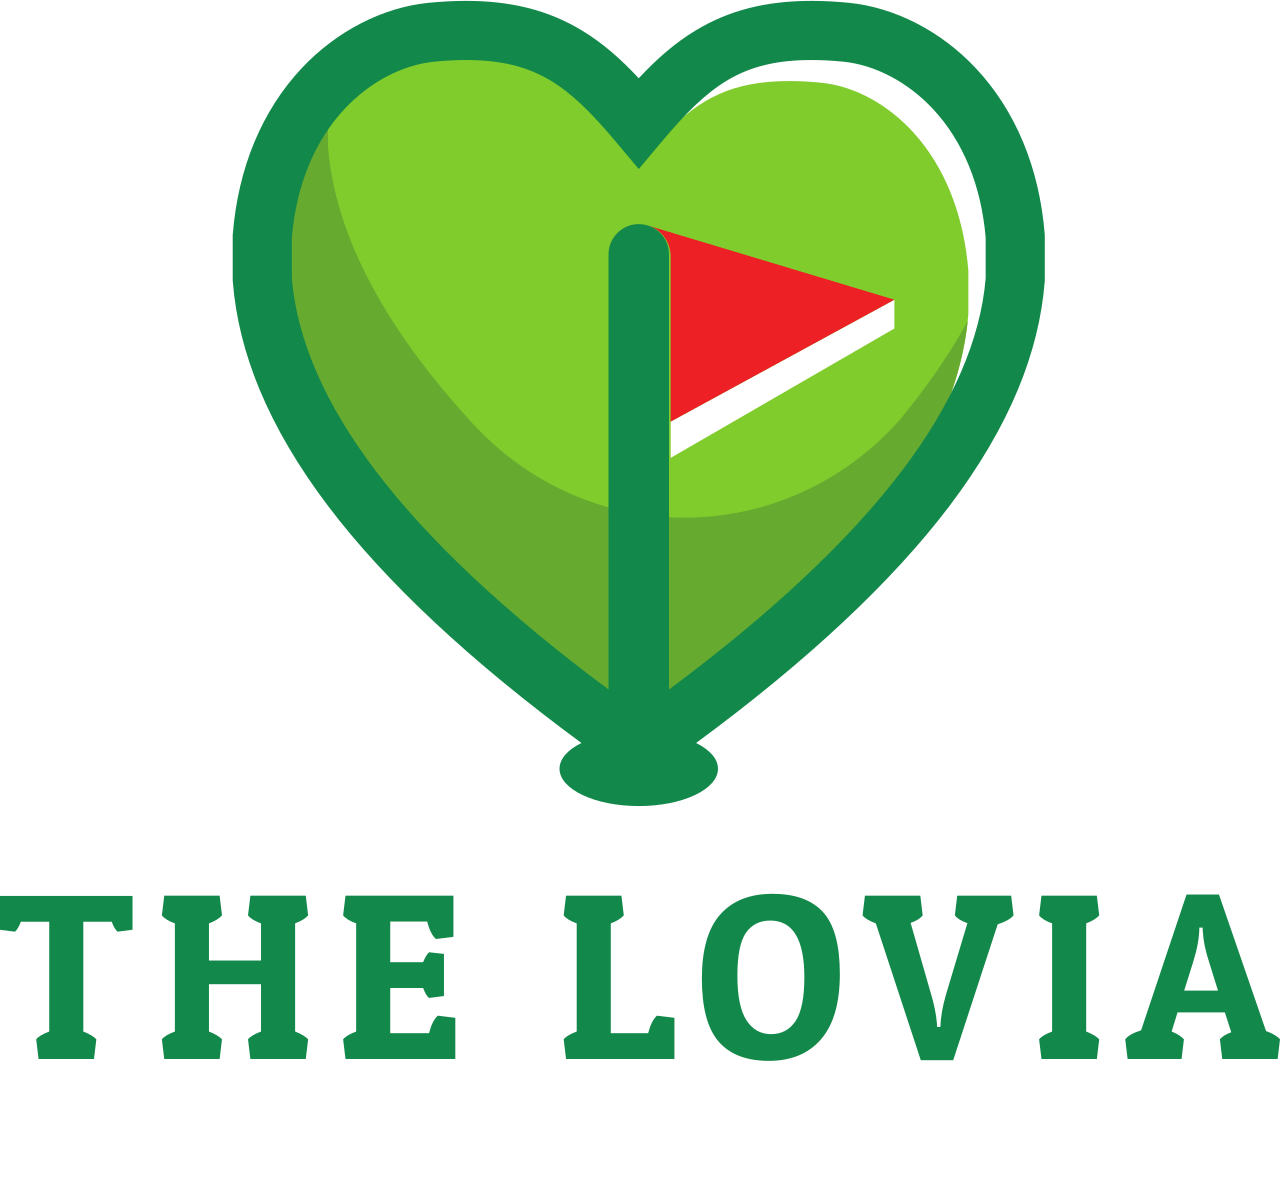 THE LOVIA Johns Memorial Golf Tournament's logo